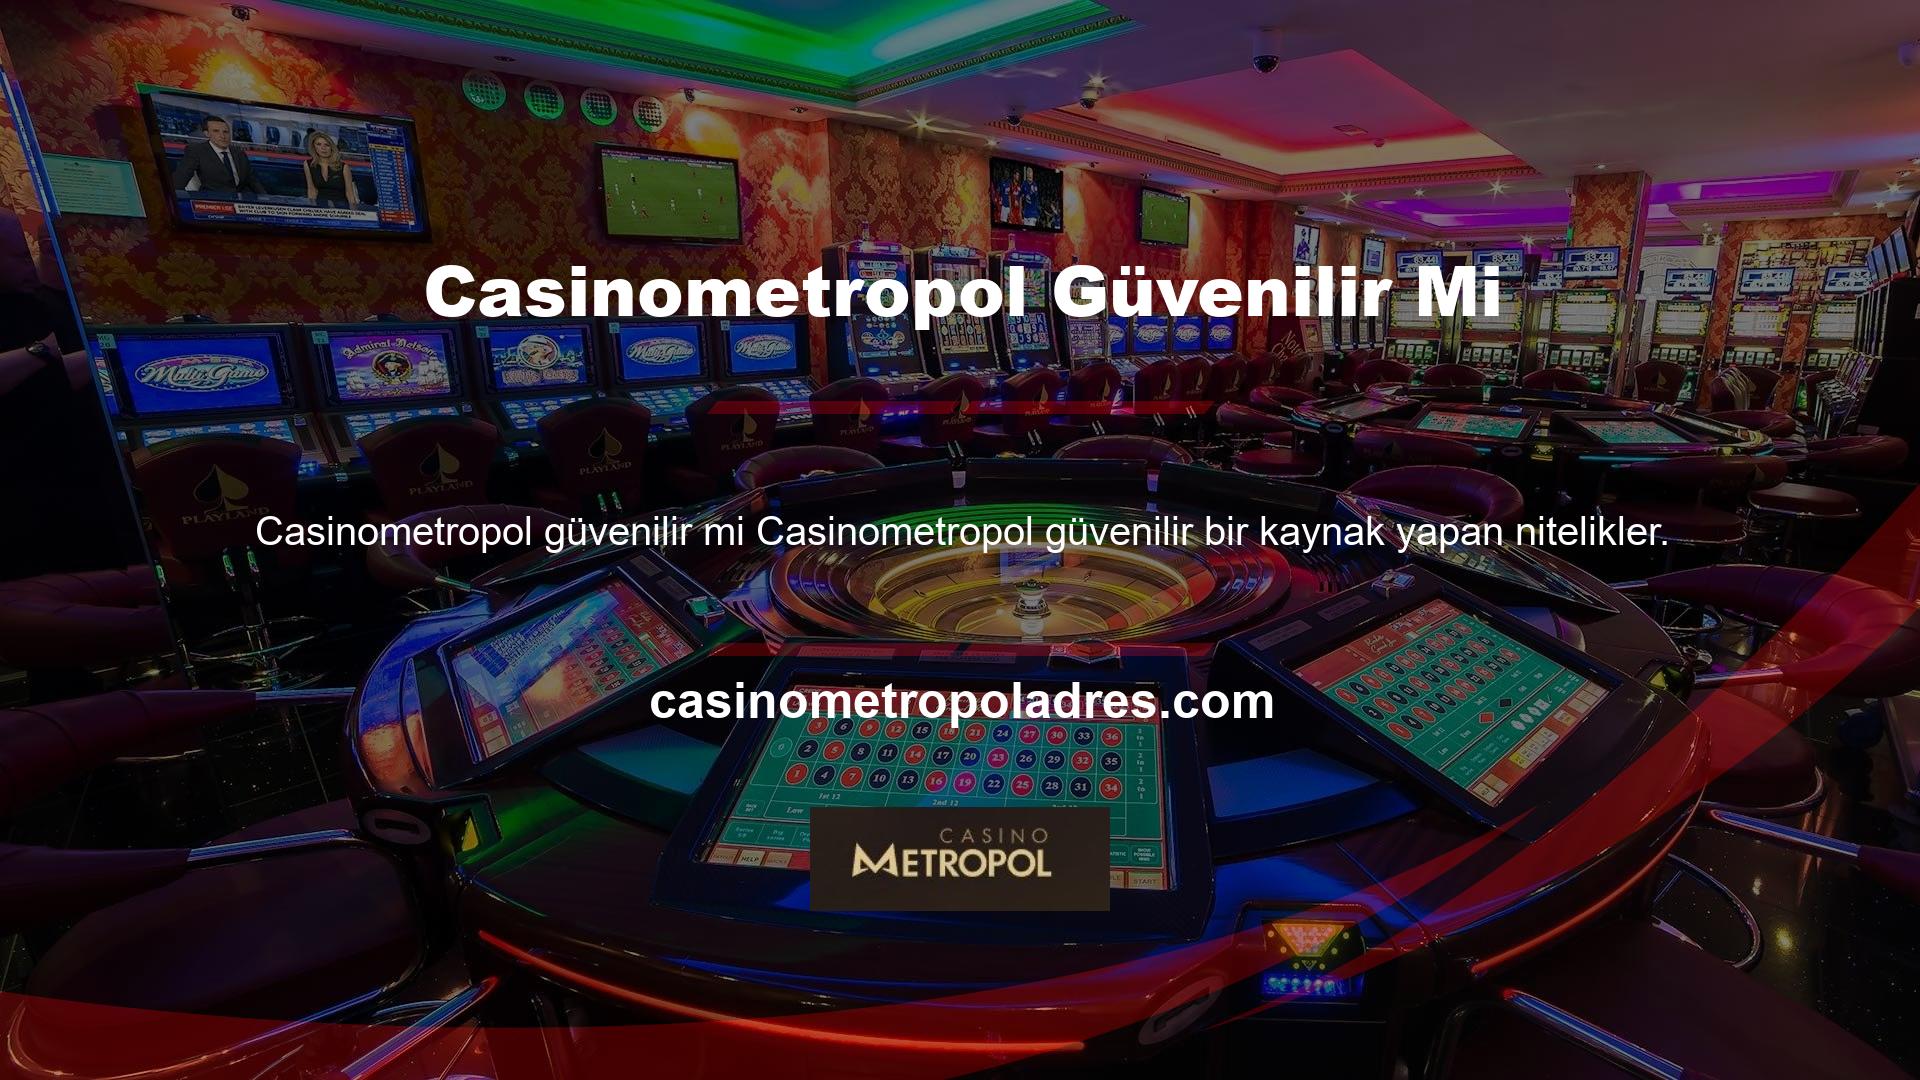 Casinometropol güvenilir, hızlı SSL ve benzeri özellikleri sağlama yeteneğinin finansal işlemlerden ve diğer hizmetlerden önce gelmesi anlaşılabilir bir durumdur